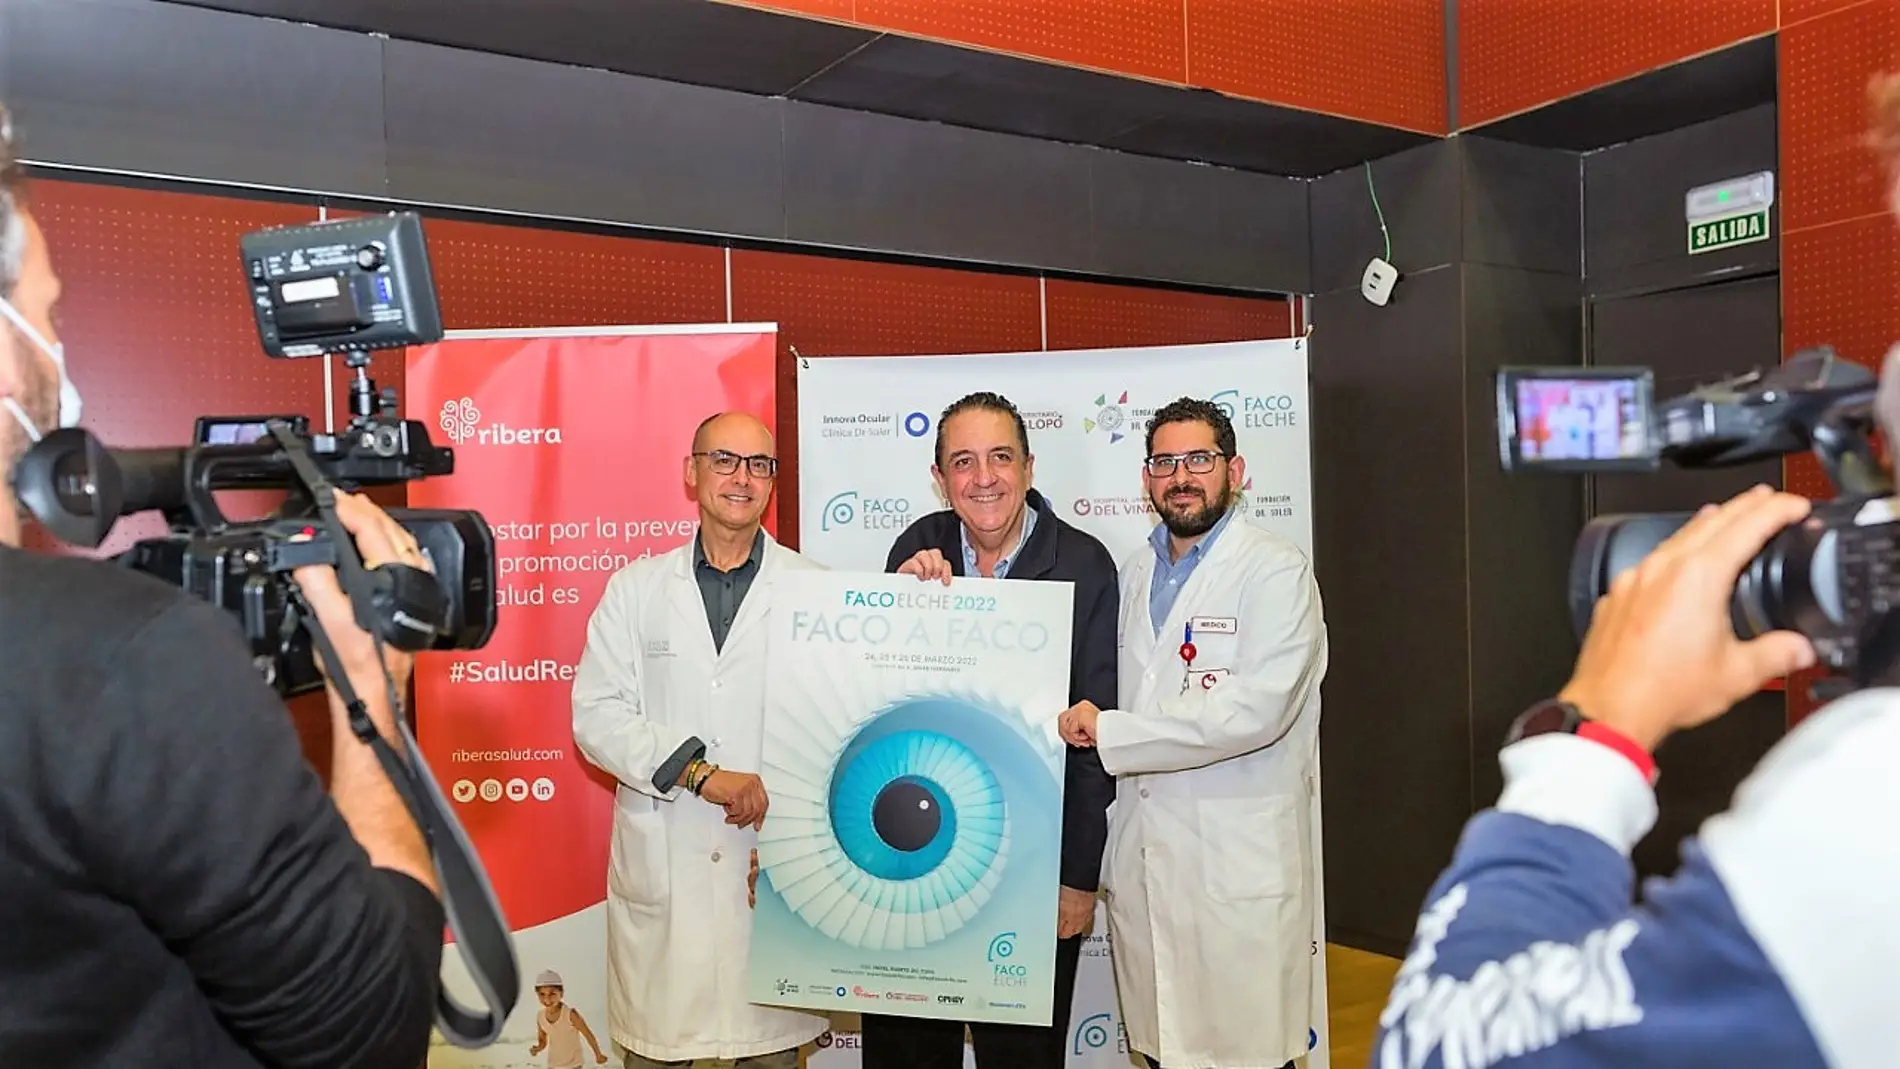 FacoElche 2022 se prepara en Elche para recibir a 1000 oftalmólogos.